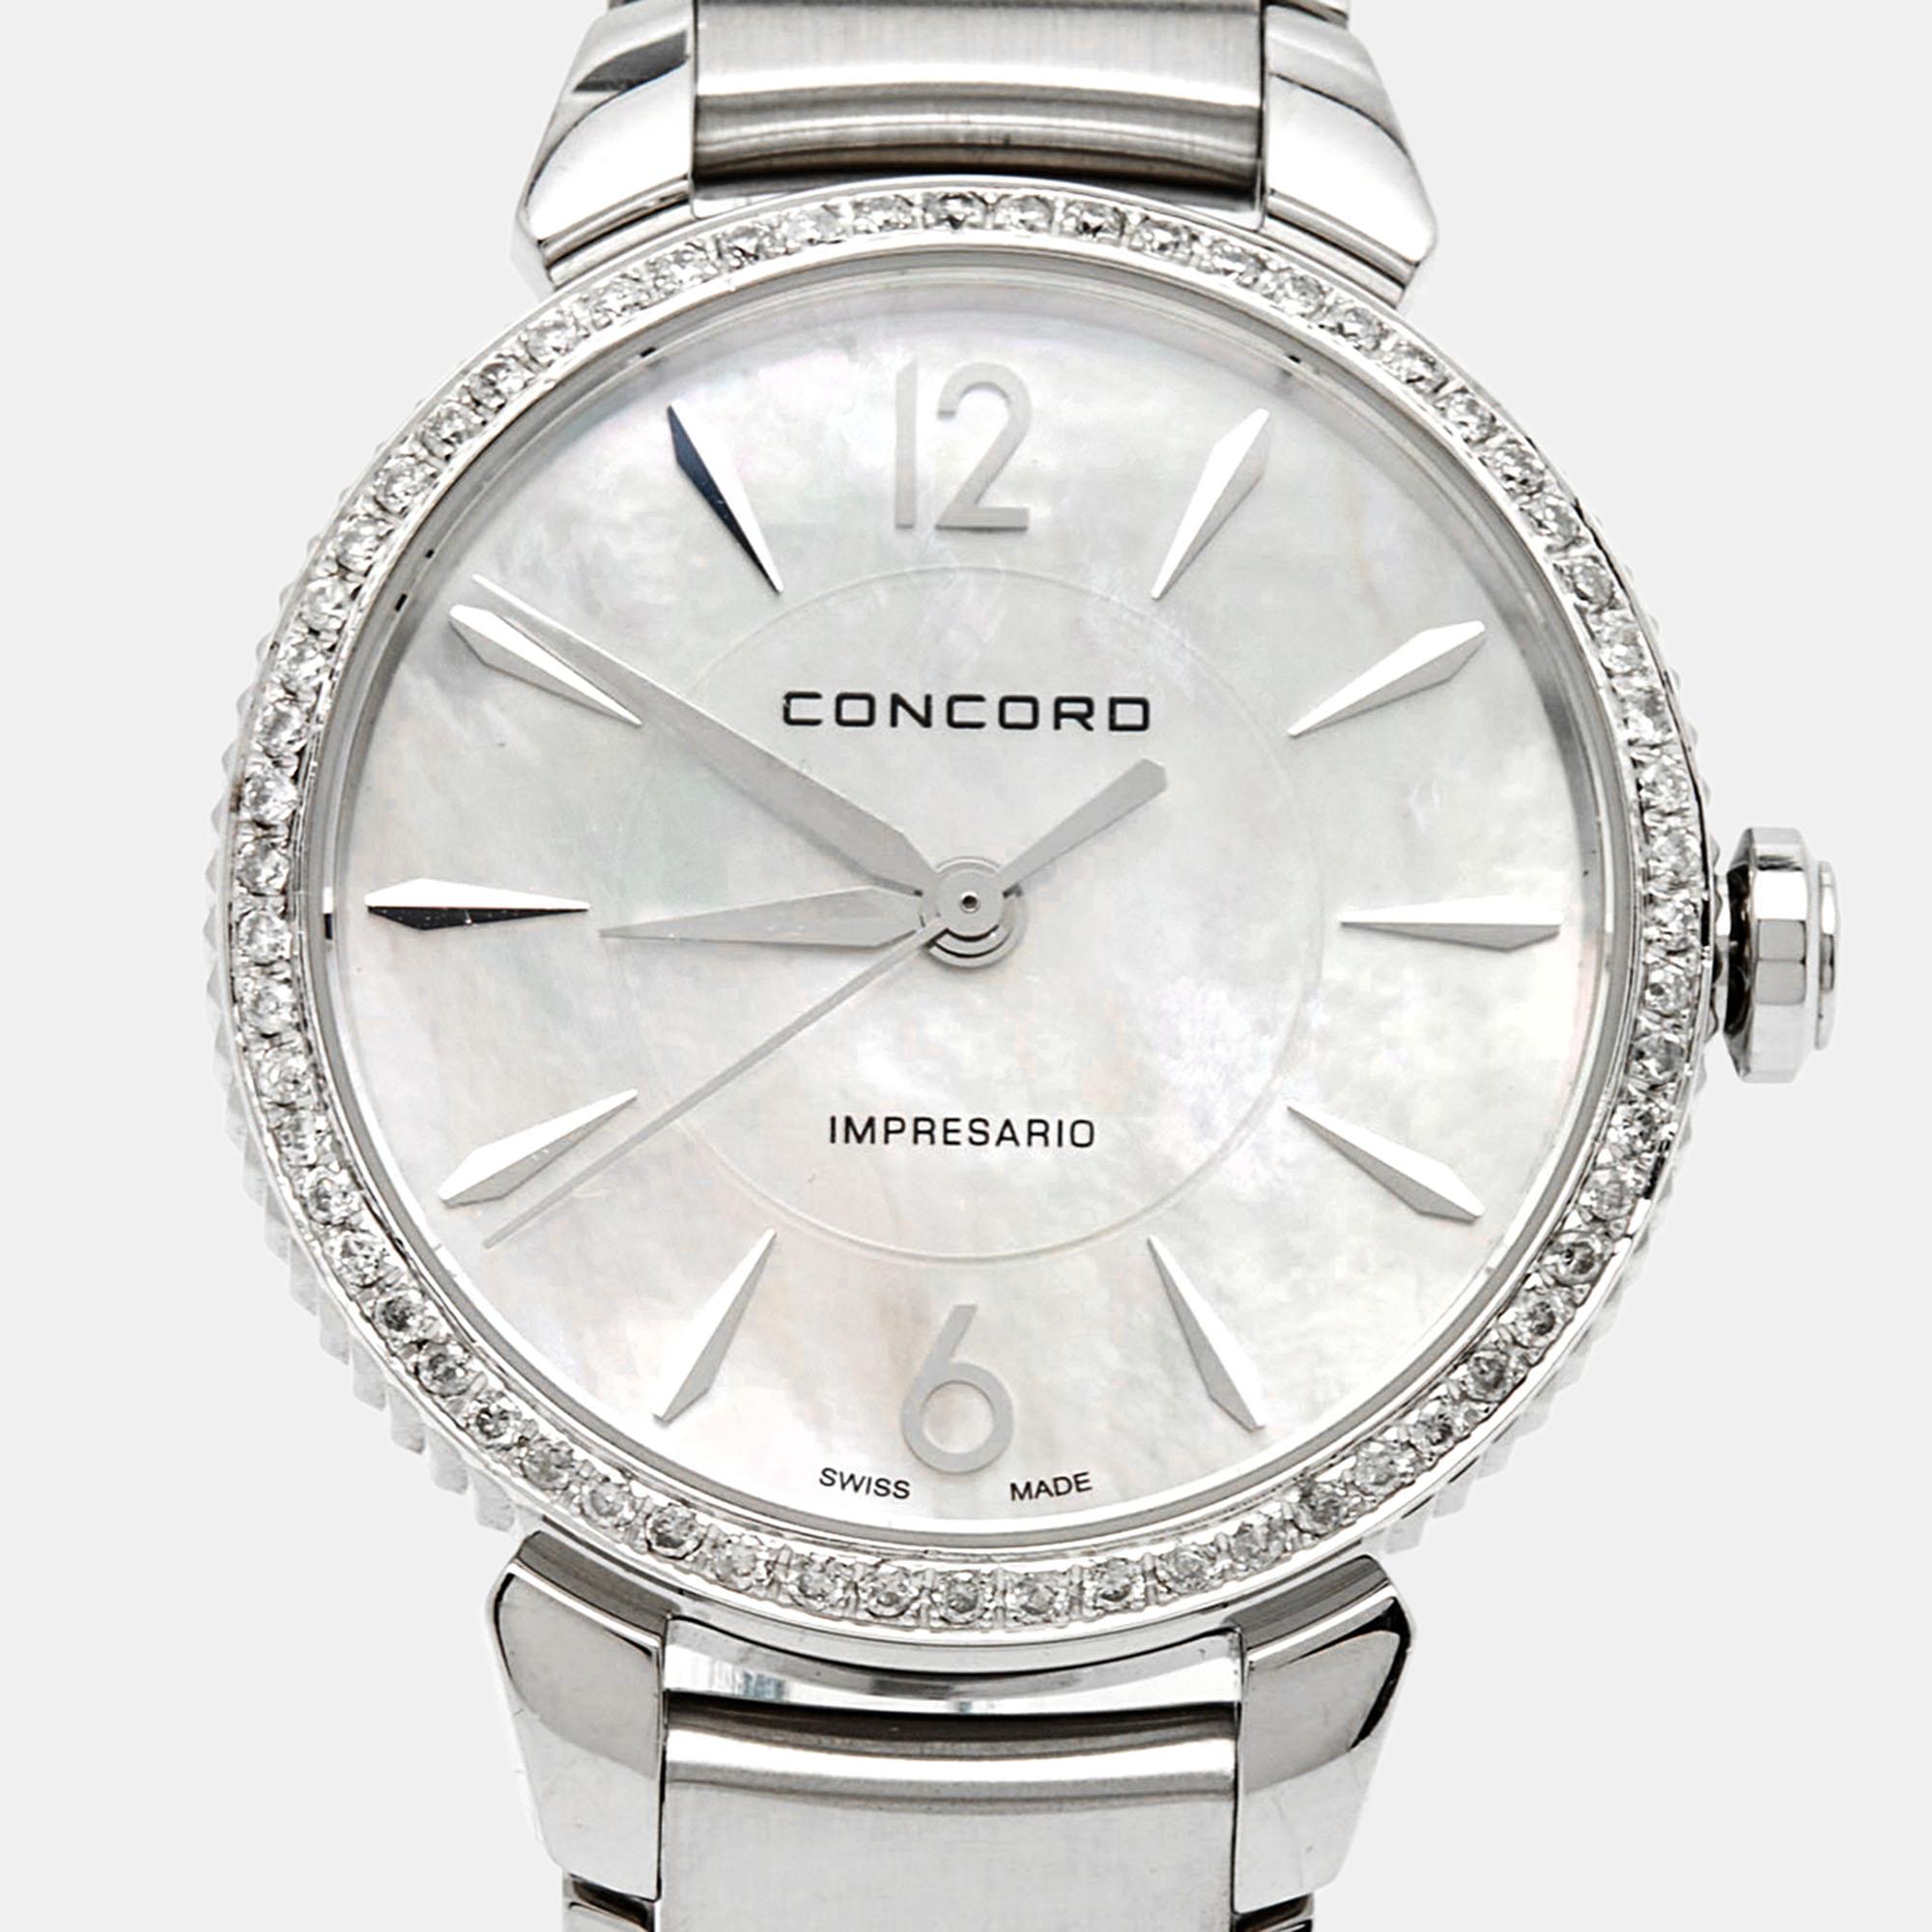 Erweitern Sie Ihre Sammlung mit diesem luxuriösen Zeitmesser von Concord. Die als Impresario bezeichnete Uhr ist aus Edelstahl gefertigt. Das Perlmutt-Zifferblatt im Inneren des Gehäuses ist mit Stahlindexen und drei Zeigern versehen. Die Lünette